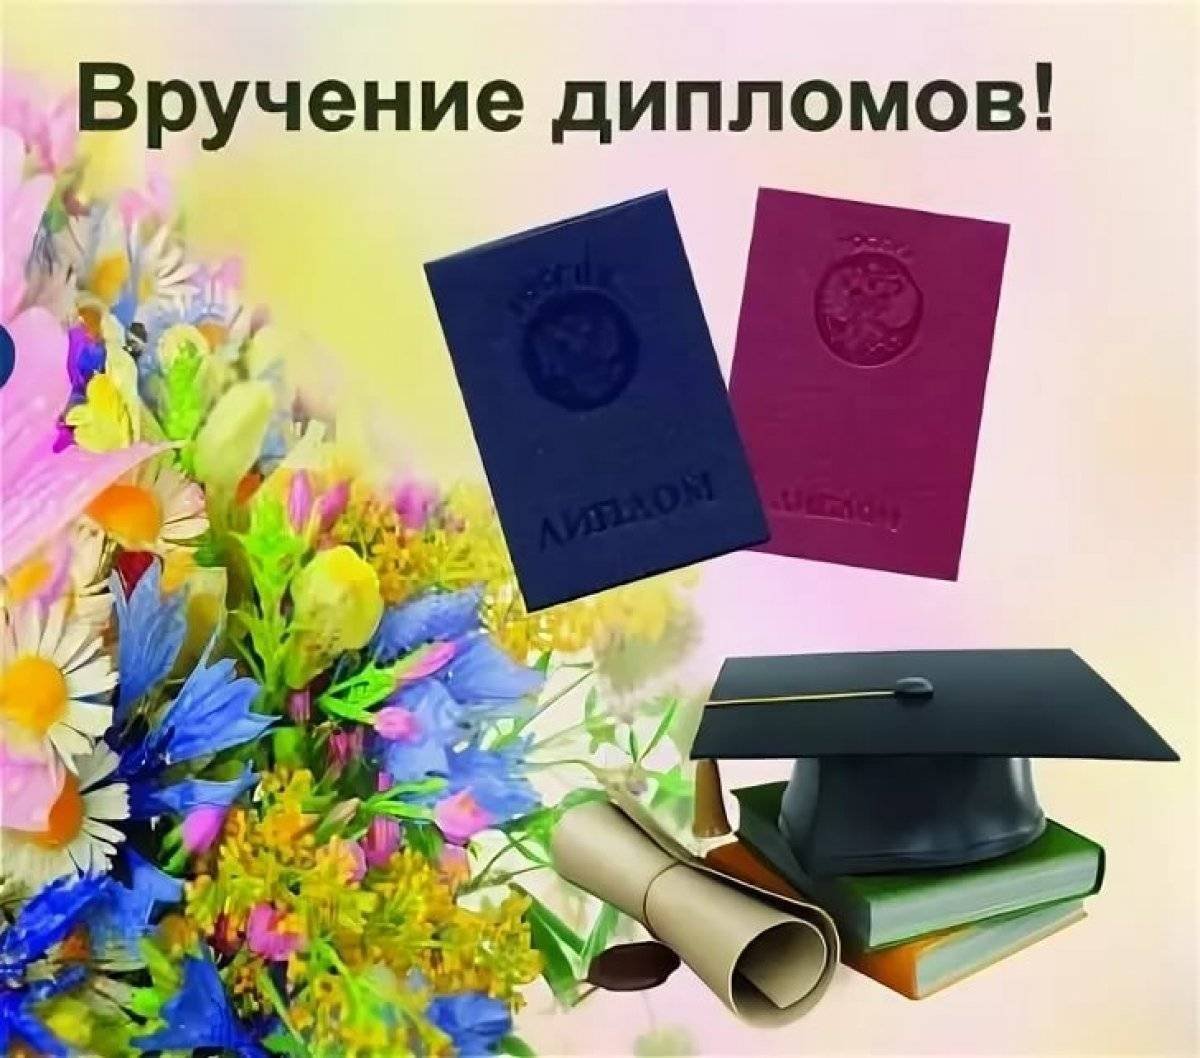 После получения диплома. Поздравляю с вручением диплома. Открытка с вручением диплома. Пожелание на вручение диплома. Поздравляю с вручением диплома открытка.